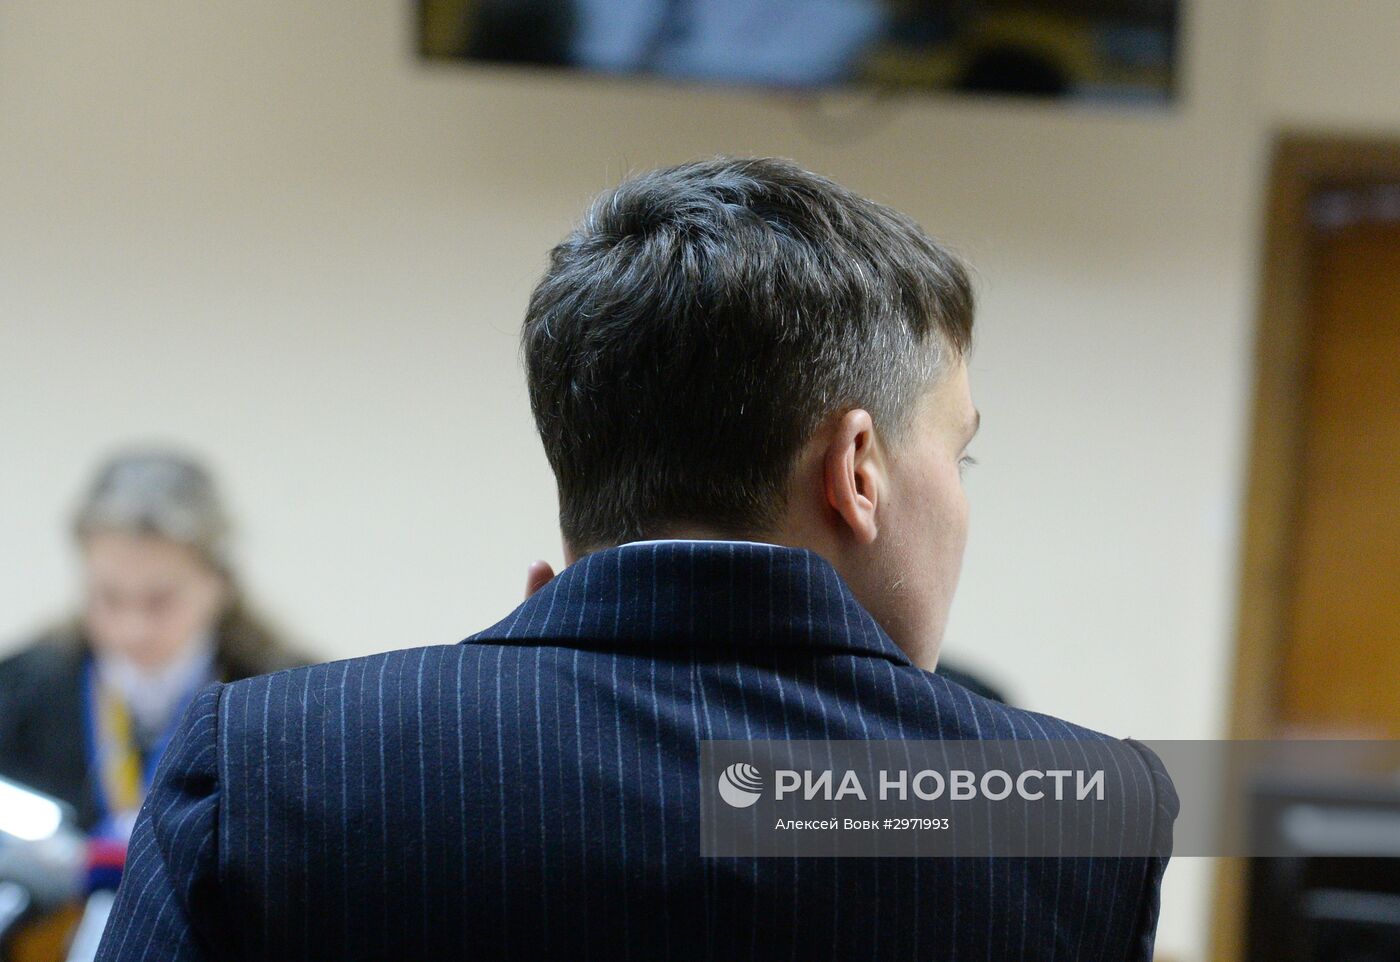 Допрос Н. Савченко в киевском суде по делу против главы ЛНР И. Плотницкого